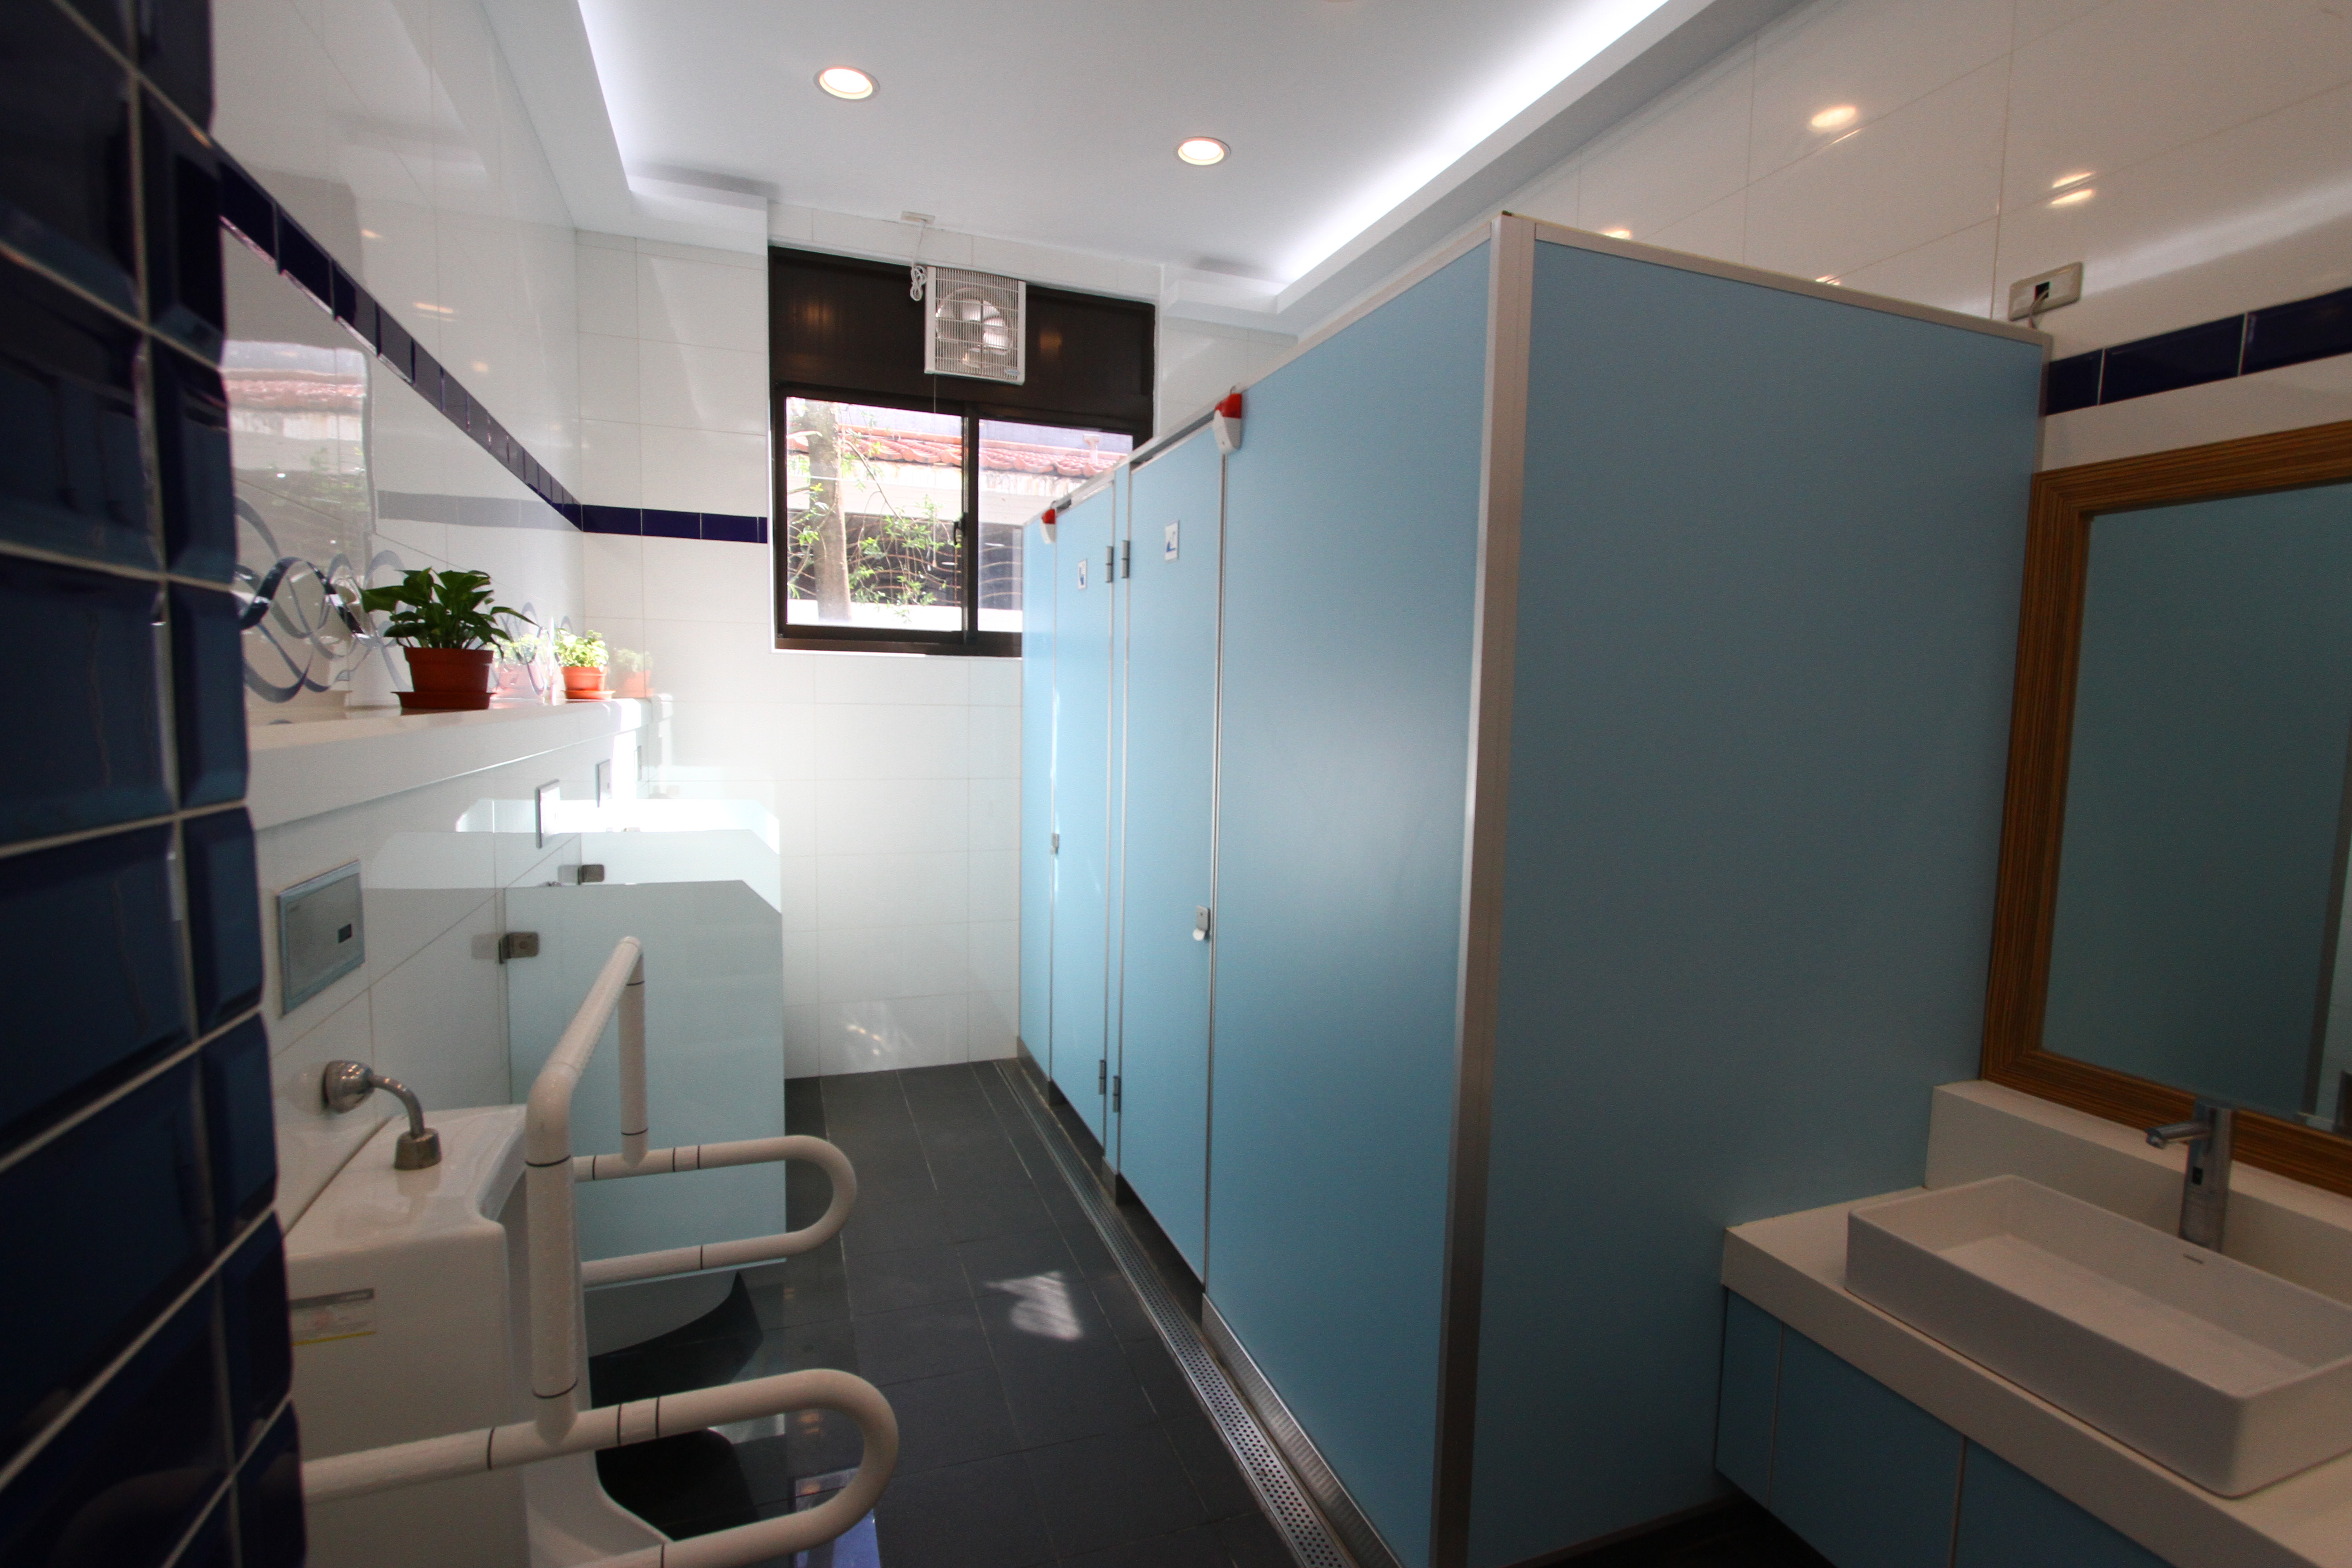 Toilet Umum Pusat Pengunjung Fulong